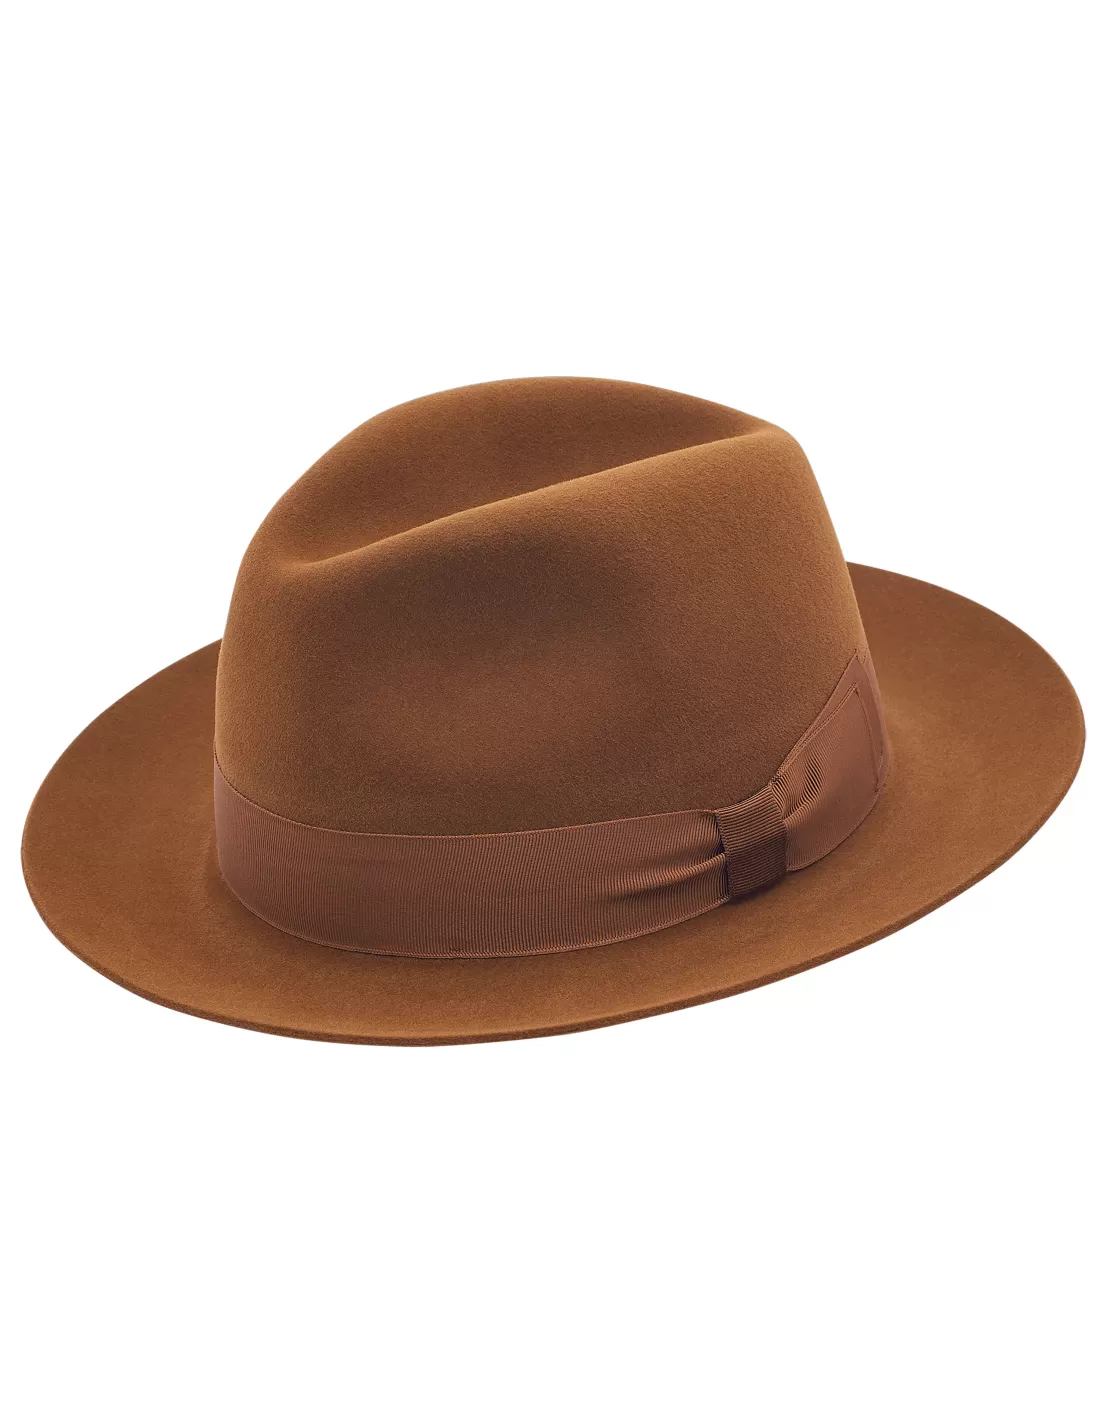 4 Ways to Clean a Felt Hat  Vintage felt hat, Felt hat, Felt cowboy hats